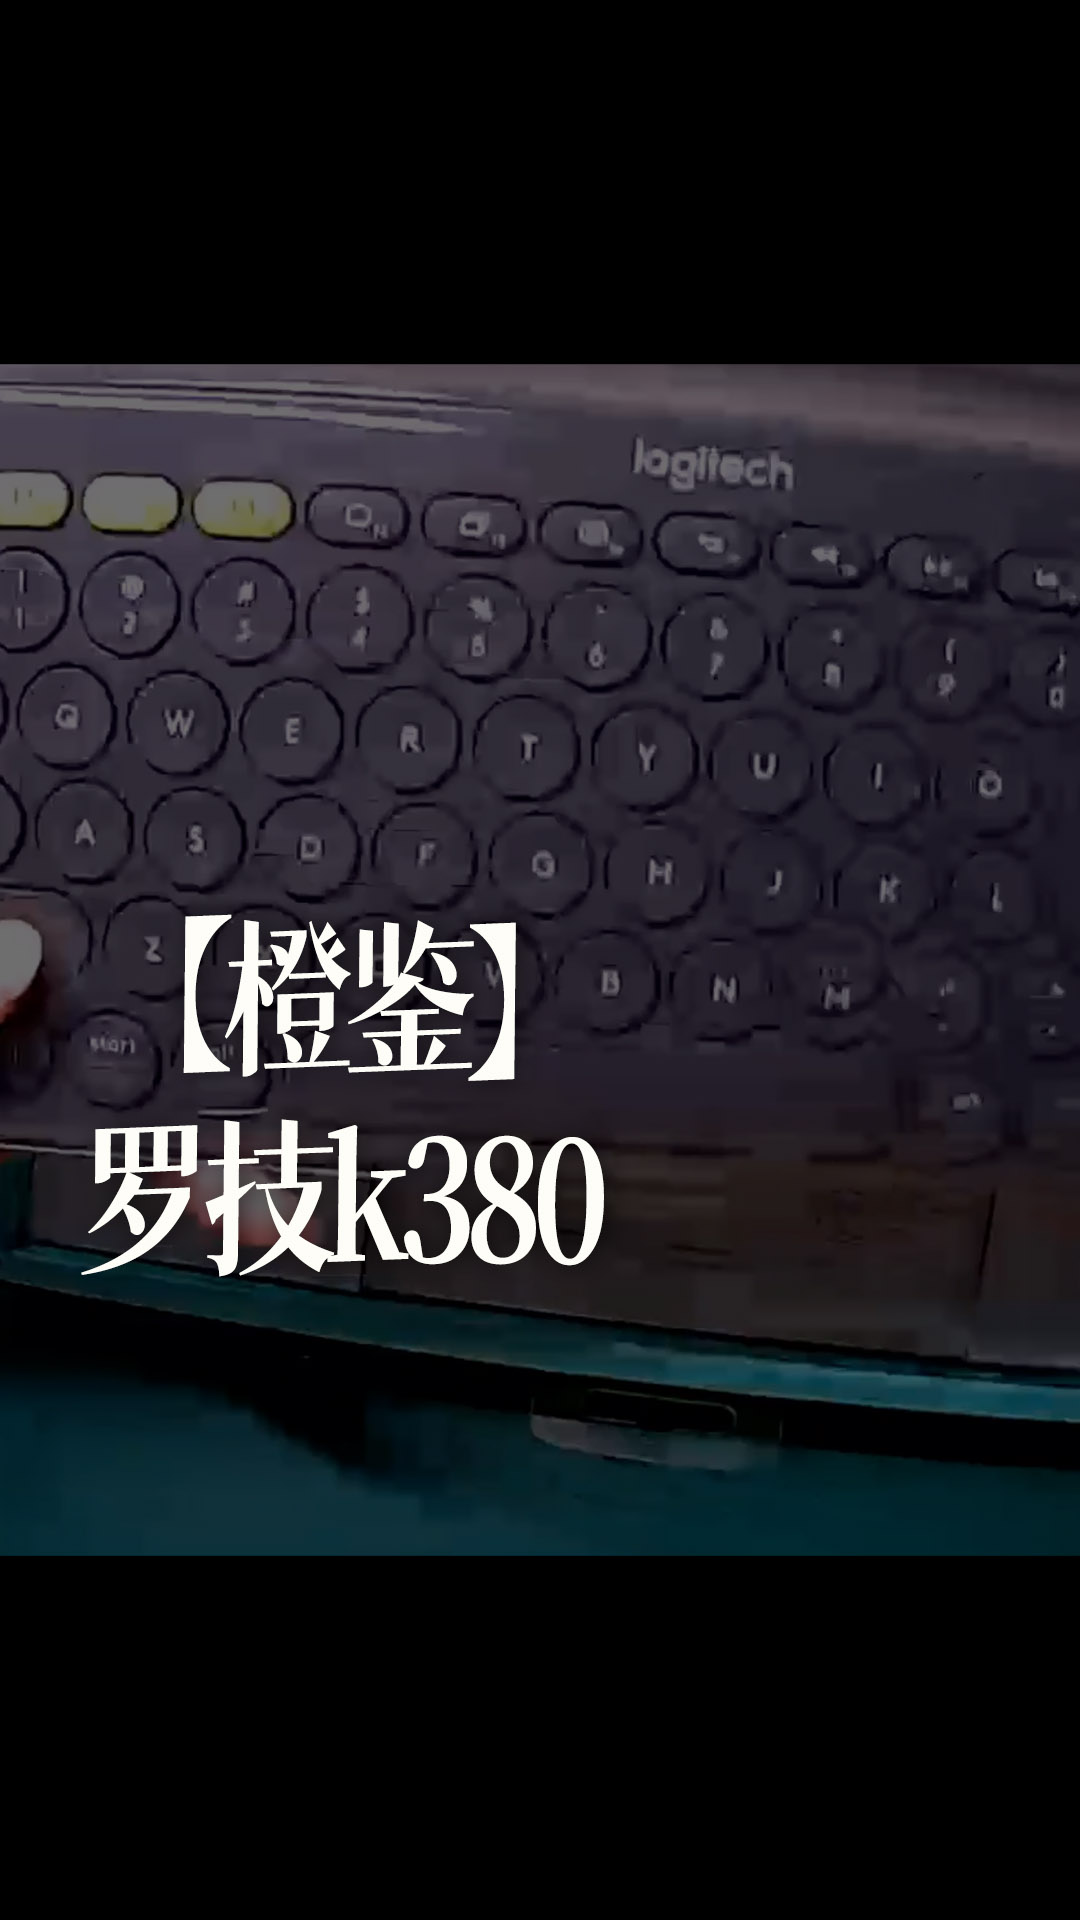 【橙鉴】罗技k380 - 1-罗技k380开箱